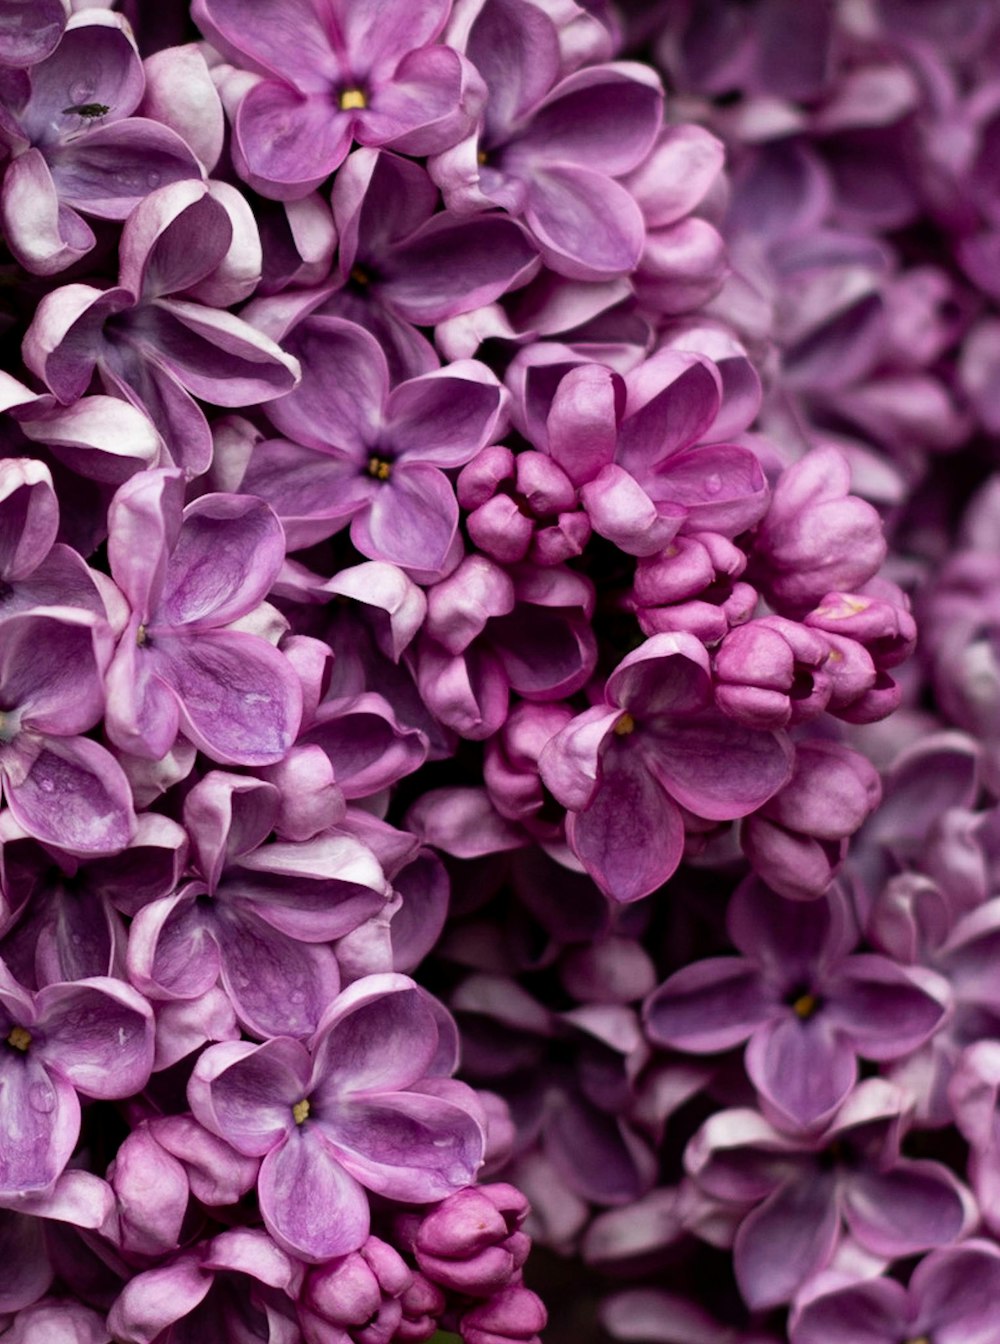 Những bức ảnh hoa tử đẹp tím lilac sẽ mang lại cho bạn không gian tĩnh lặng và thư giãn. Với những tông màu nhẹ nhàng và hình ảnh tử đẹp, chúng sẽ đem lại cảm giác thư thái và thanh bình cho ngày dài của bạn.